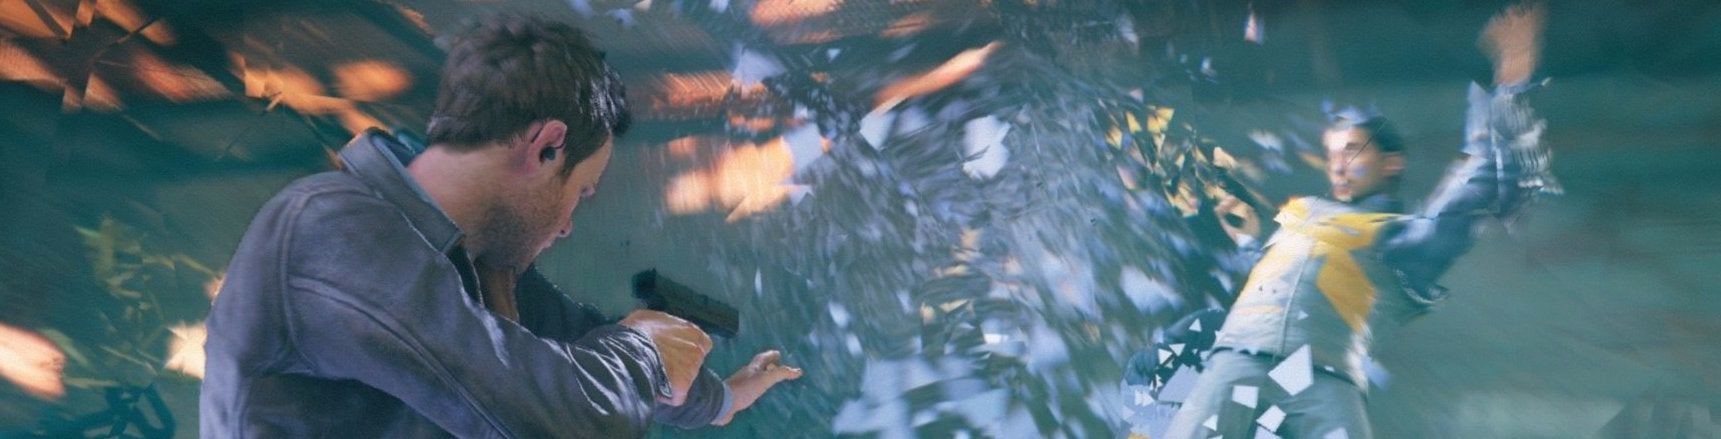 Obrazki dla Digital Foundry: wstępne spojrzenie na Quantum Break